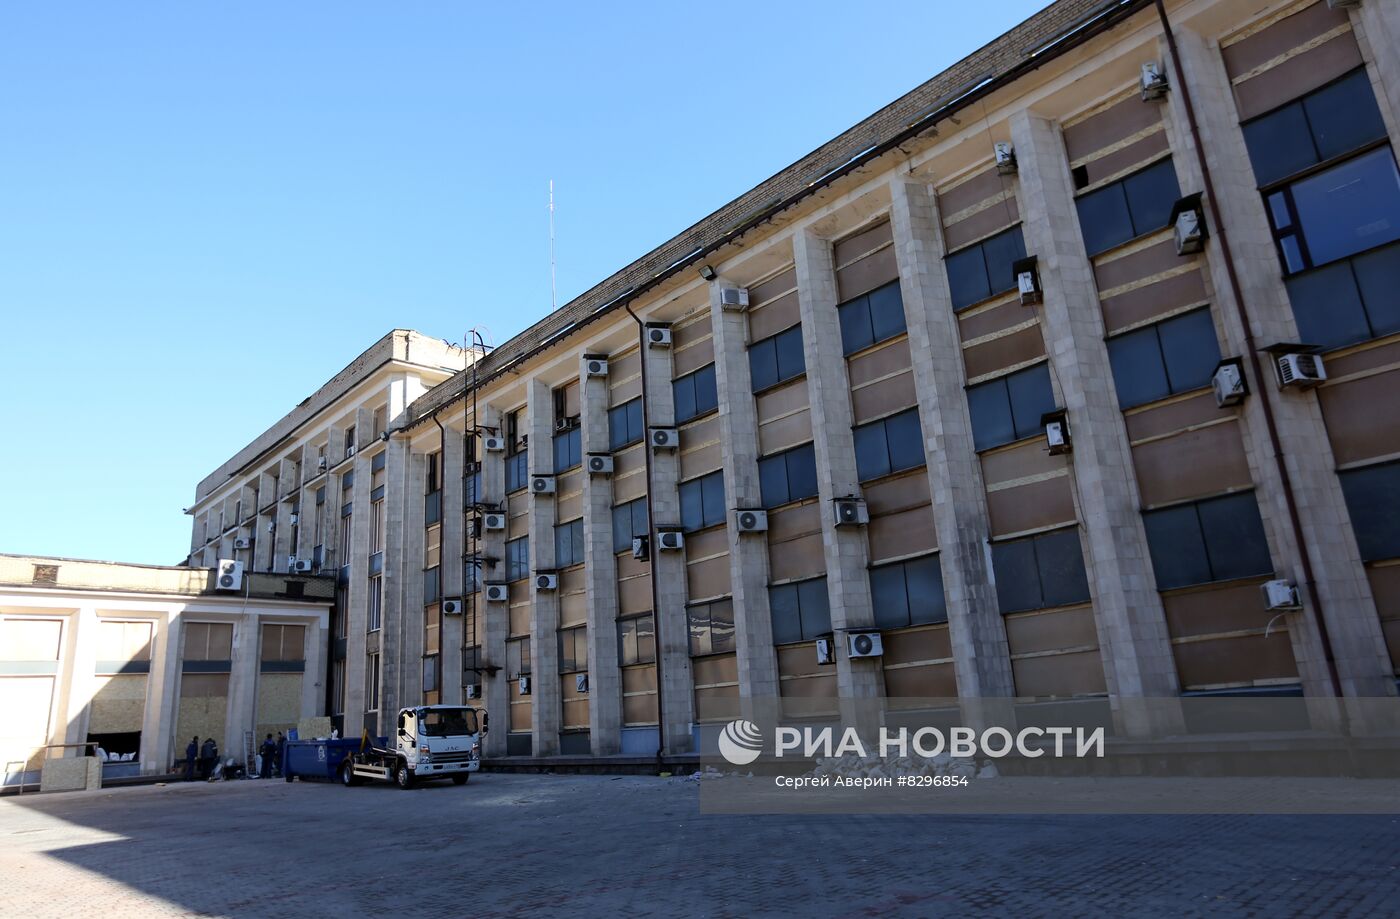 Восстановление здания администрации Донецка